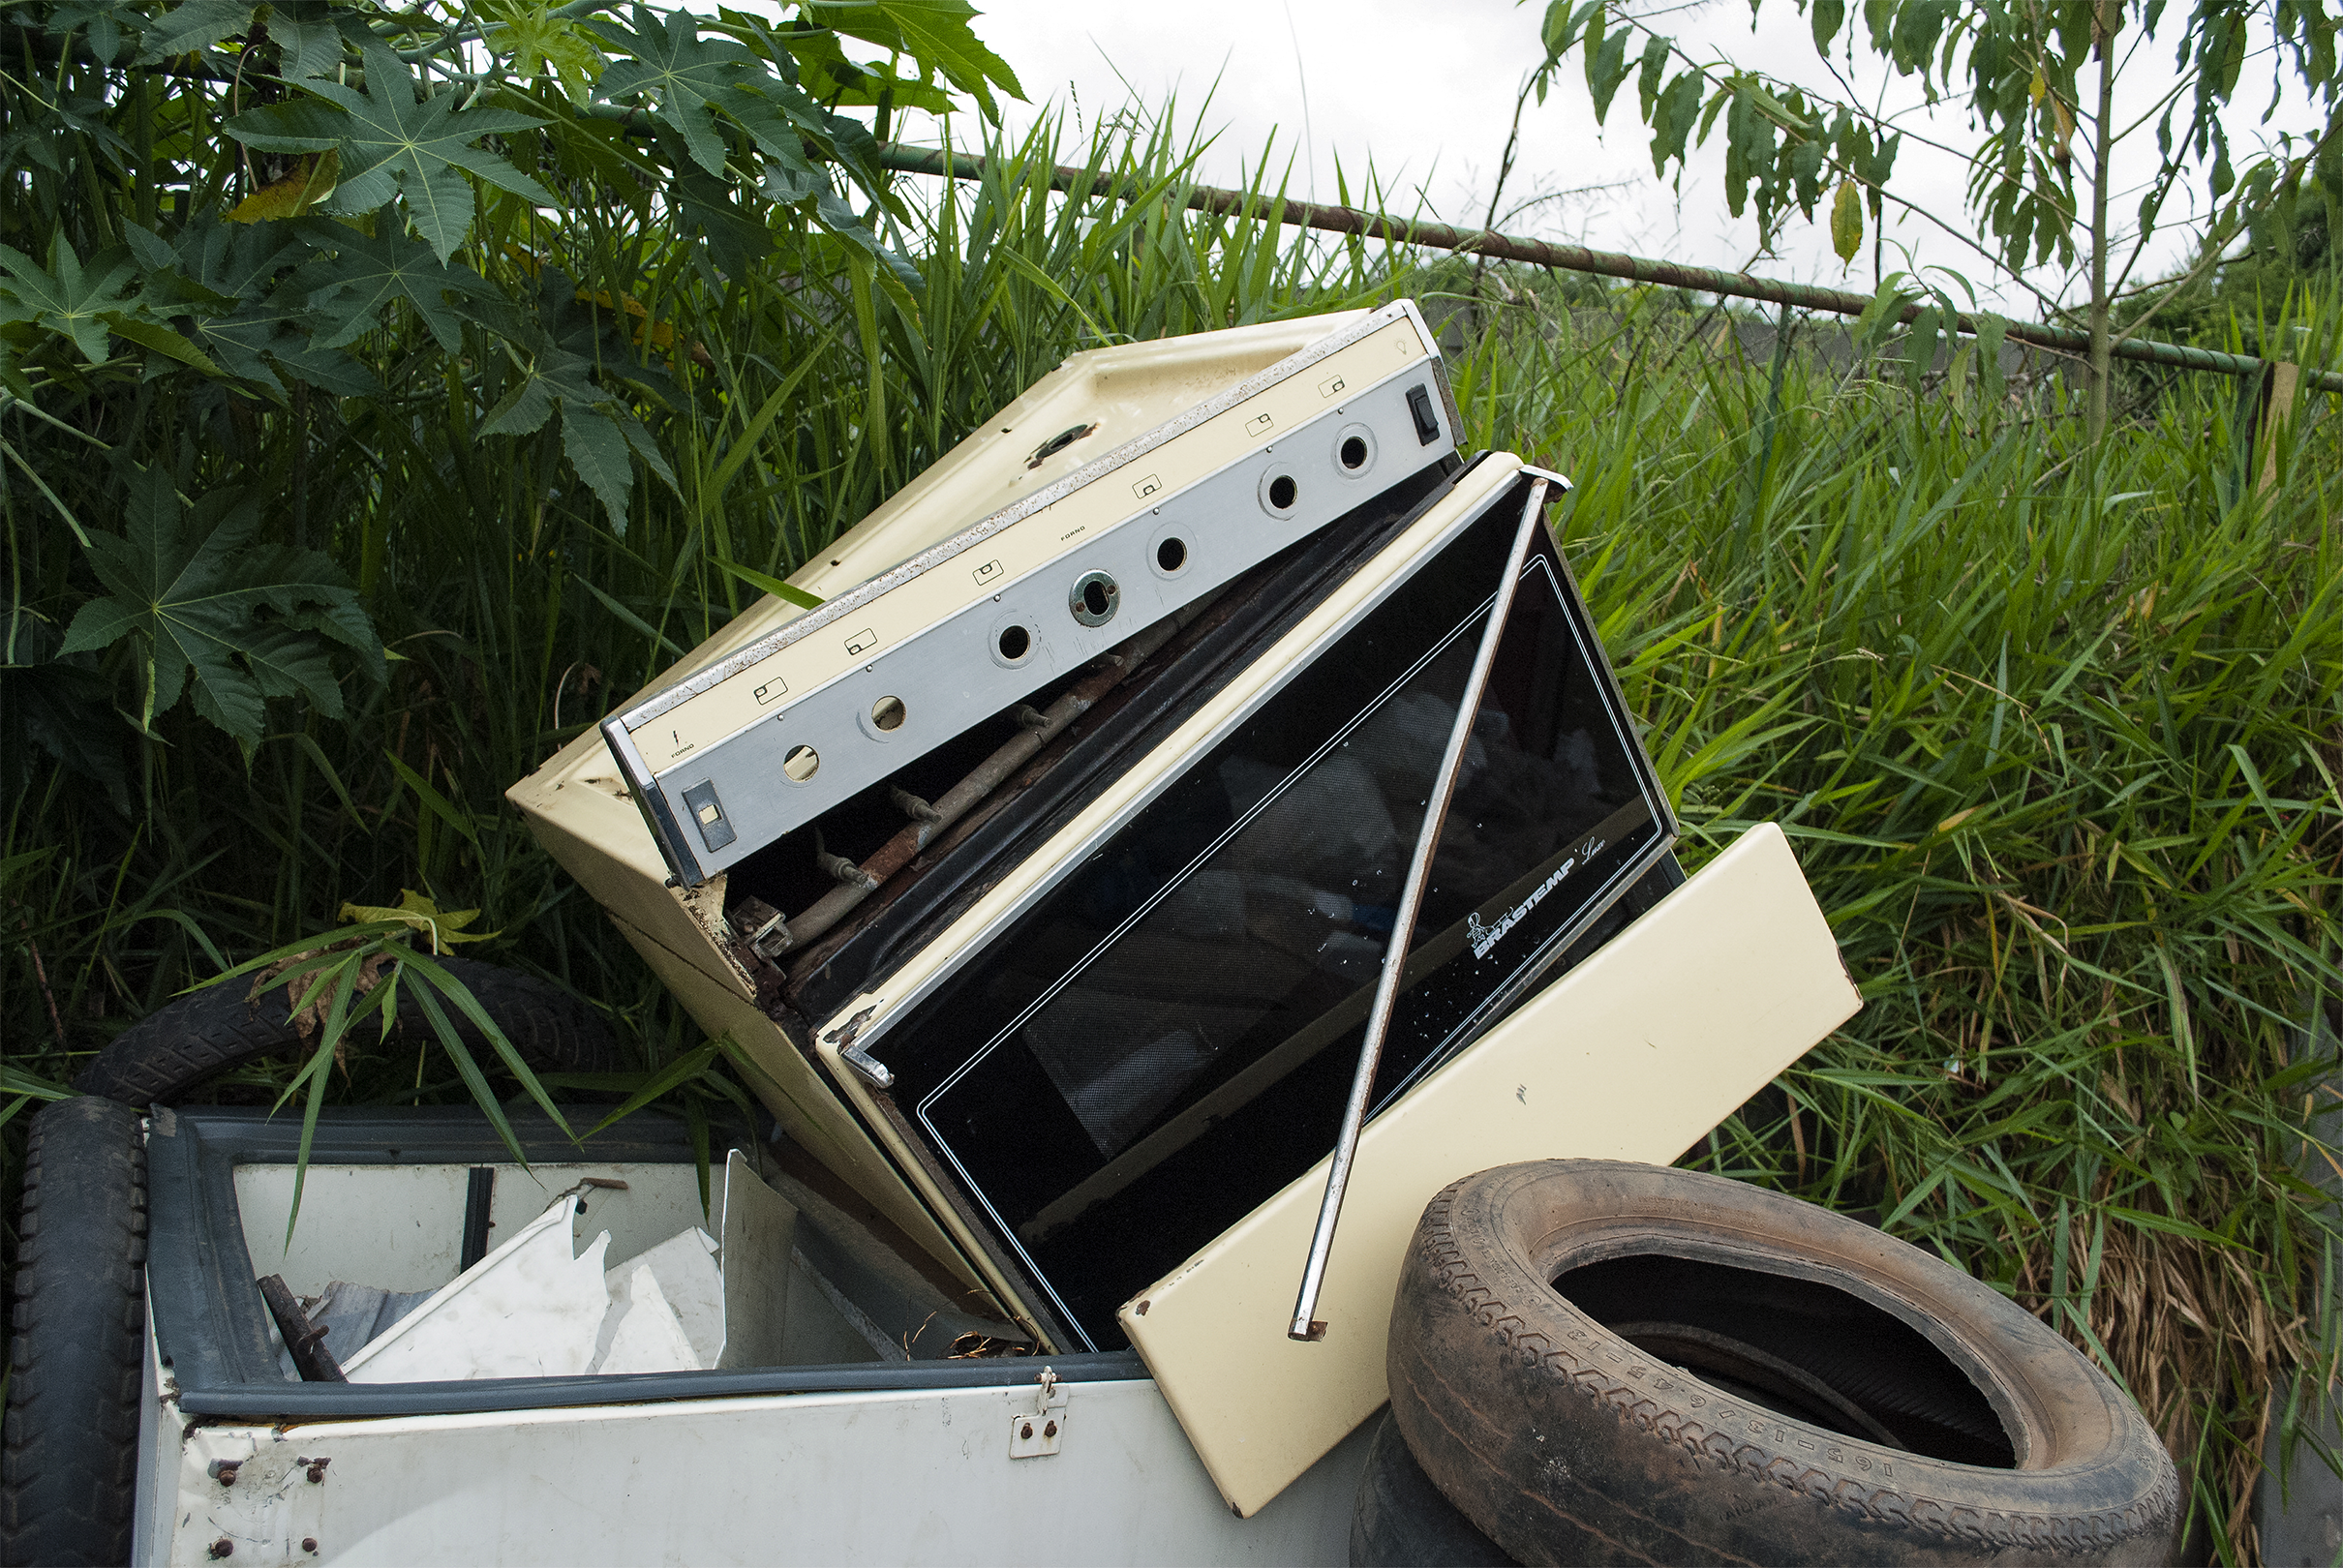 __Eletrodomésticos também são um exemplo de lixo eletrônico - na imagem, um fogão abandonado - foto por Marcos Coelho